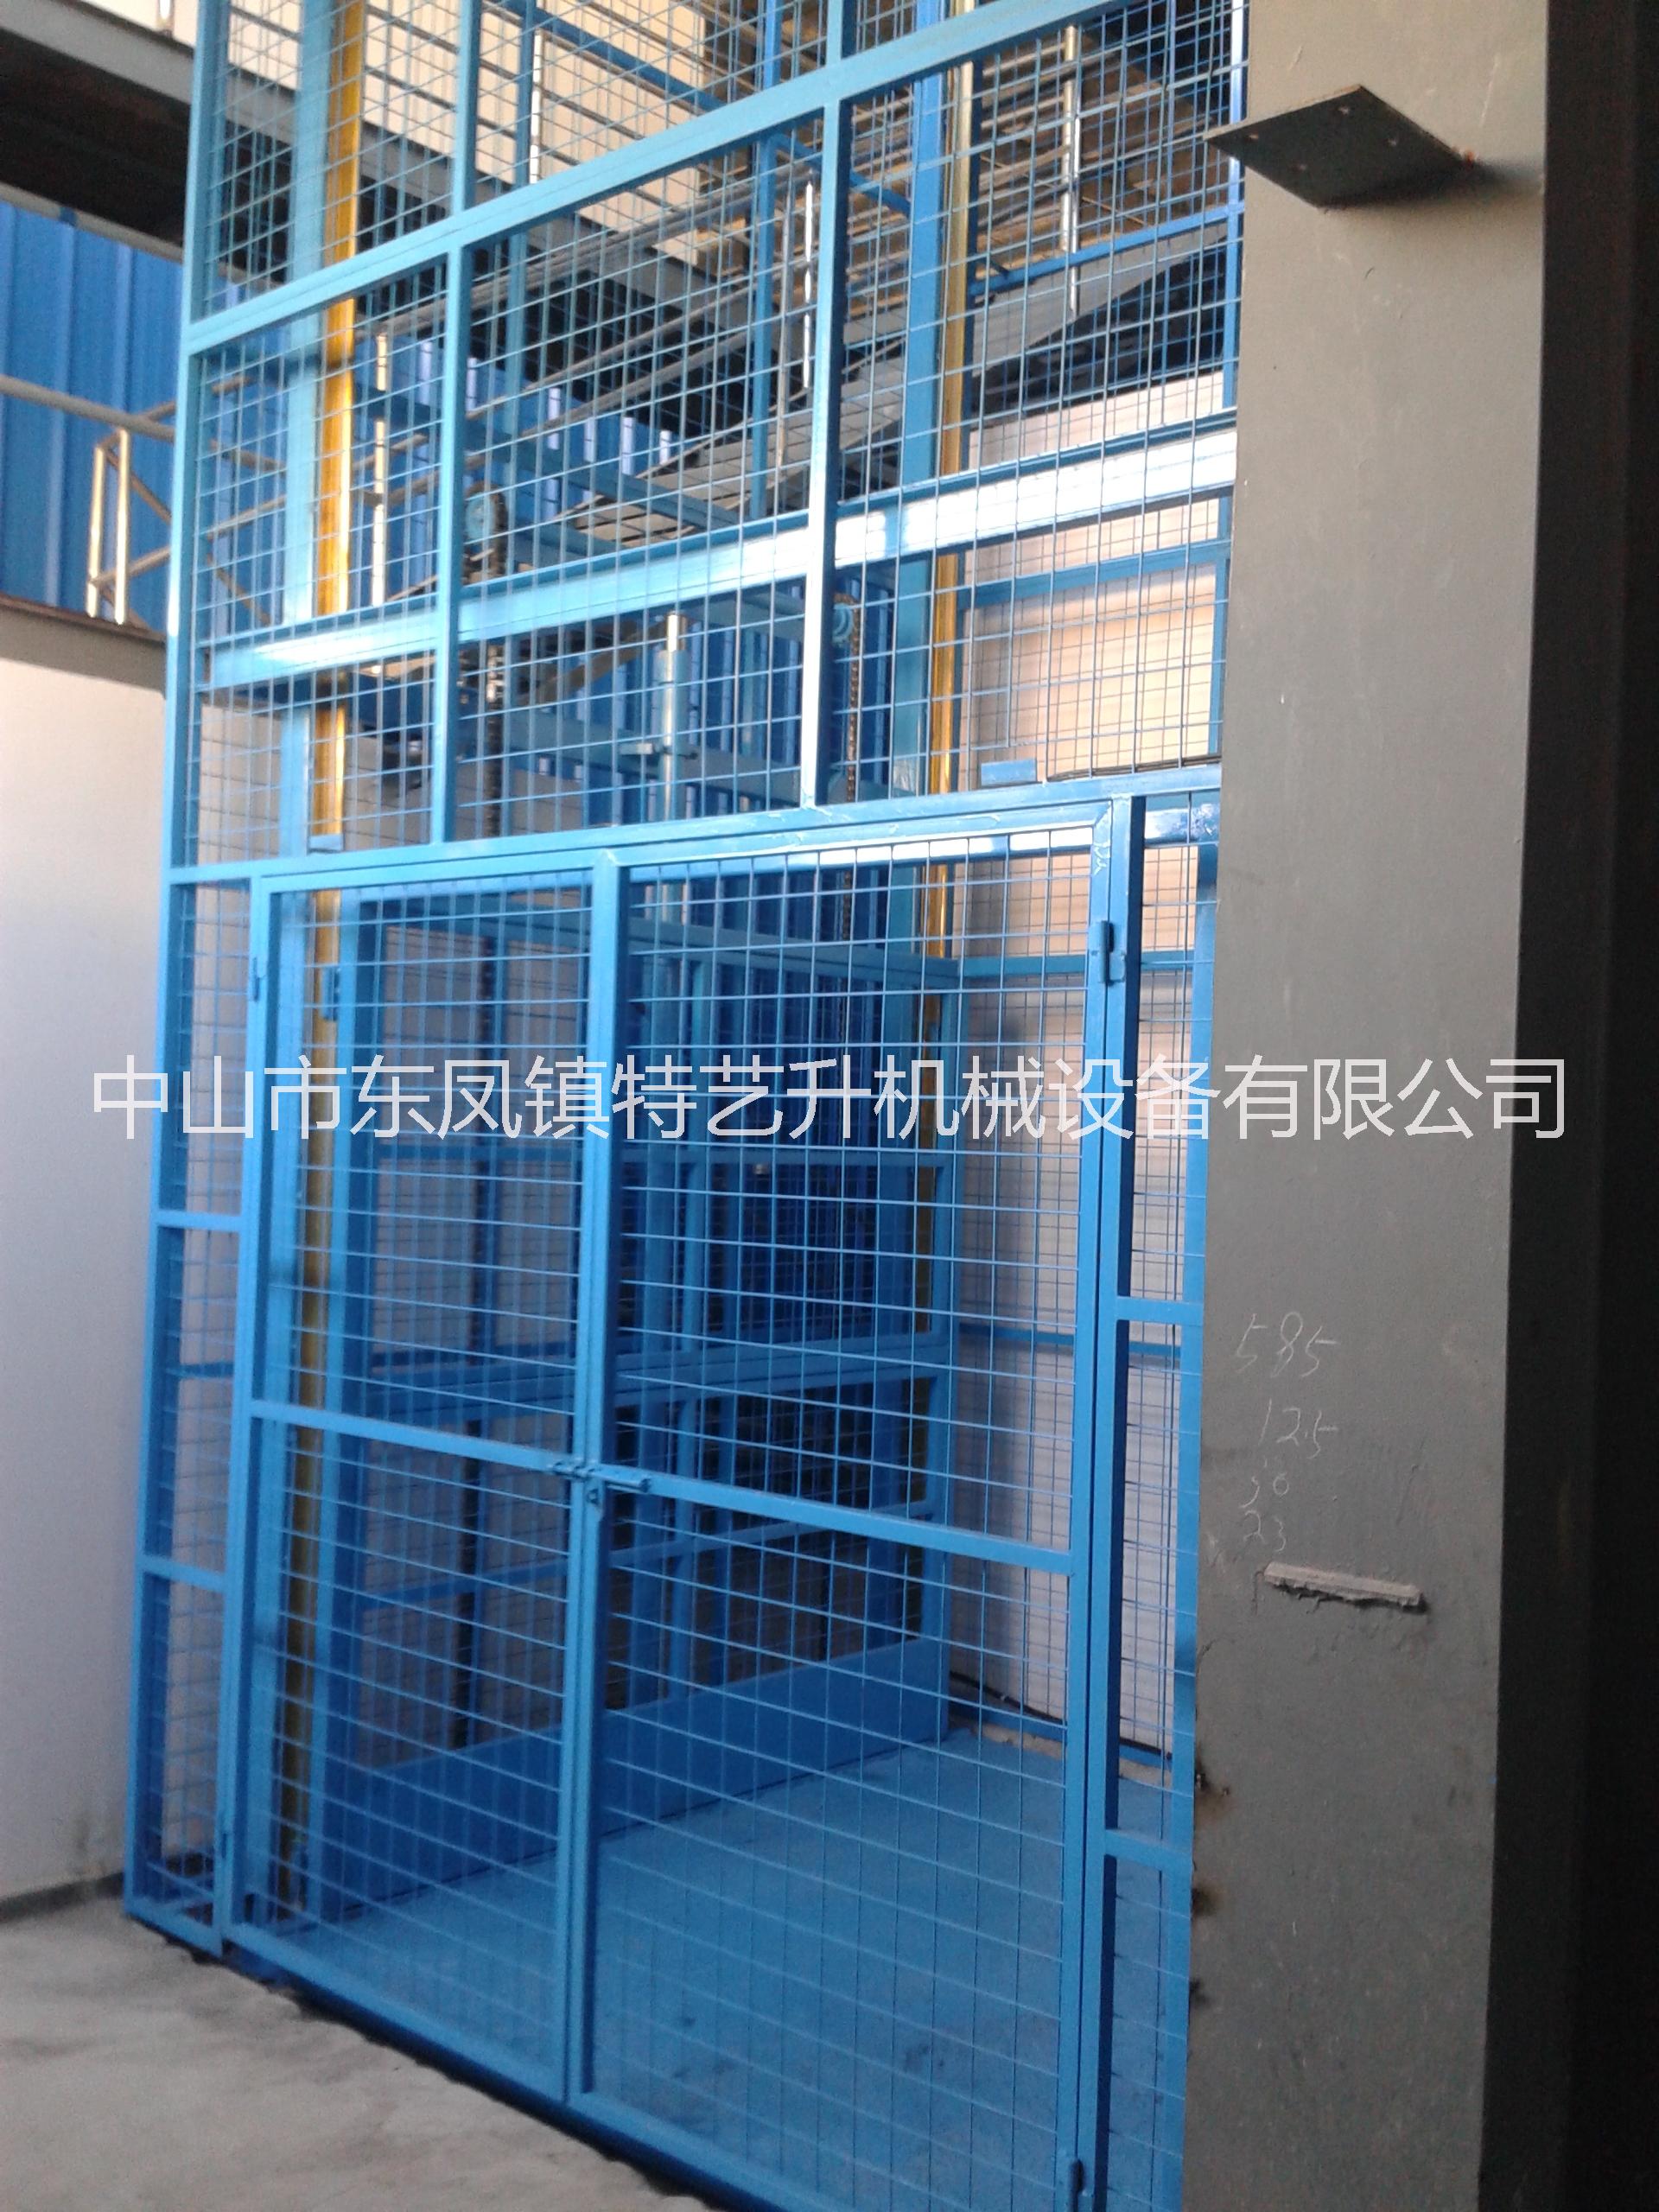 广州市导轨式液压升降货梯  货梯生产厂家  广州市导轨式液压升降货梯图片